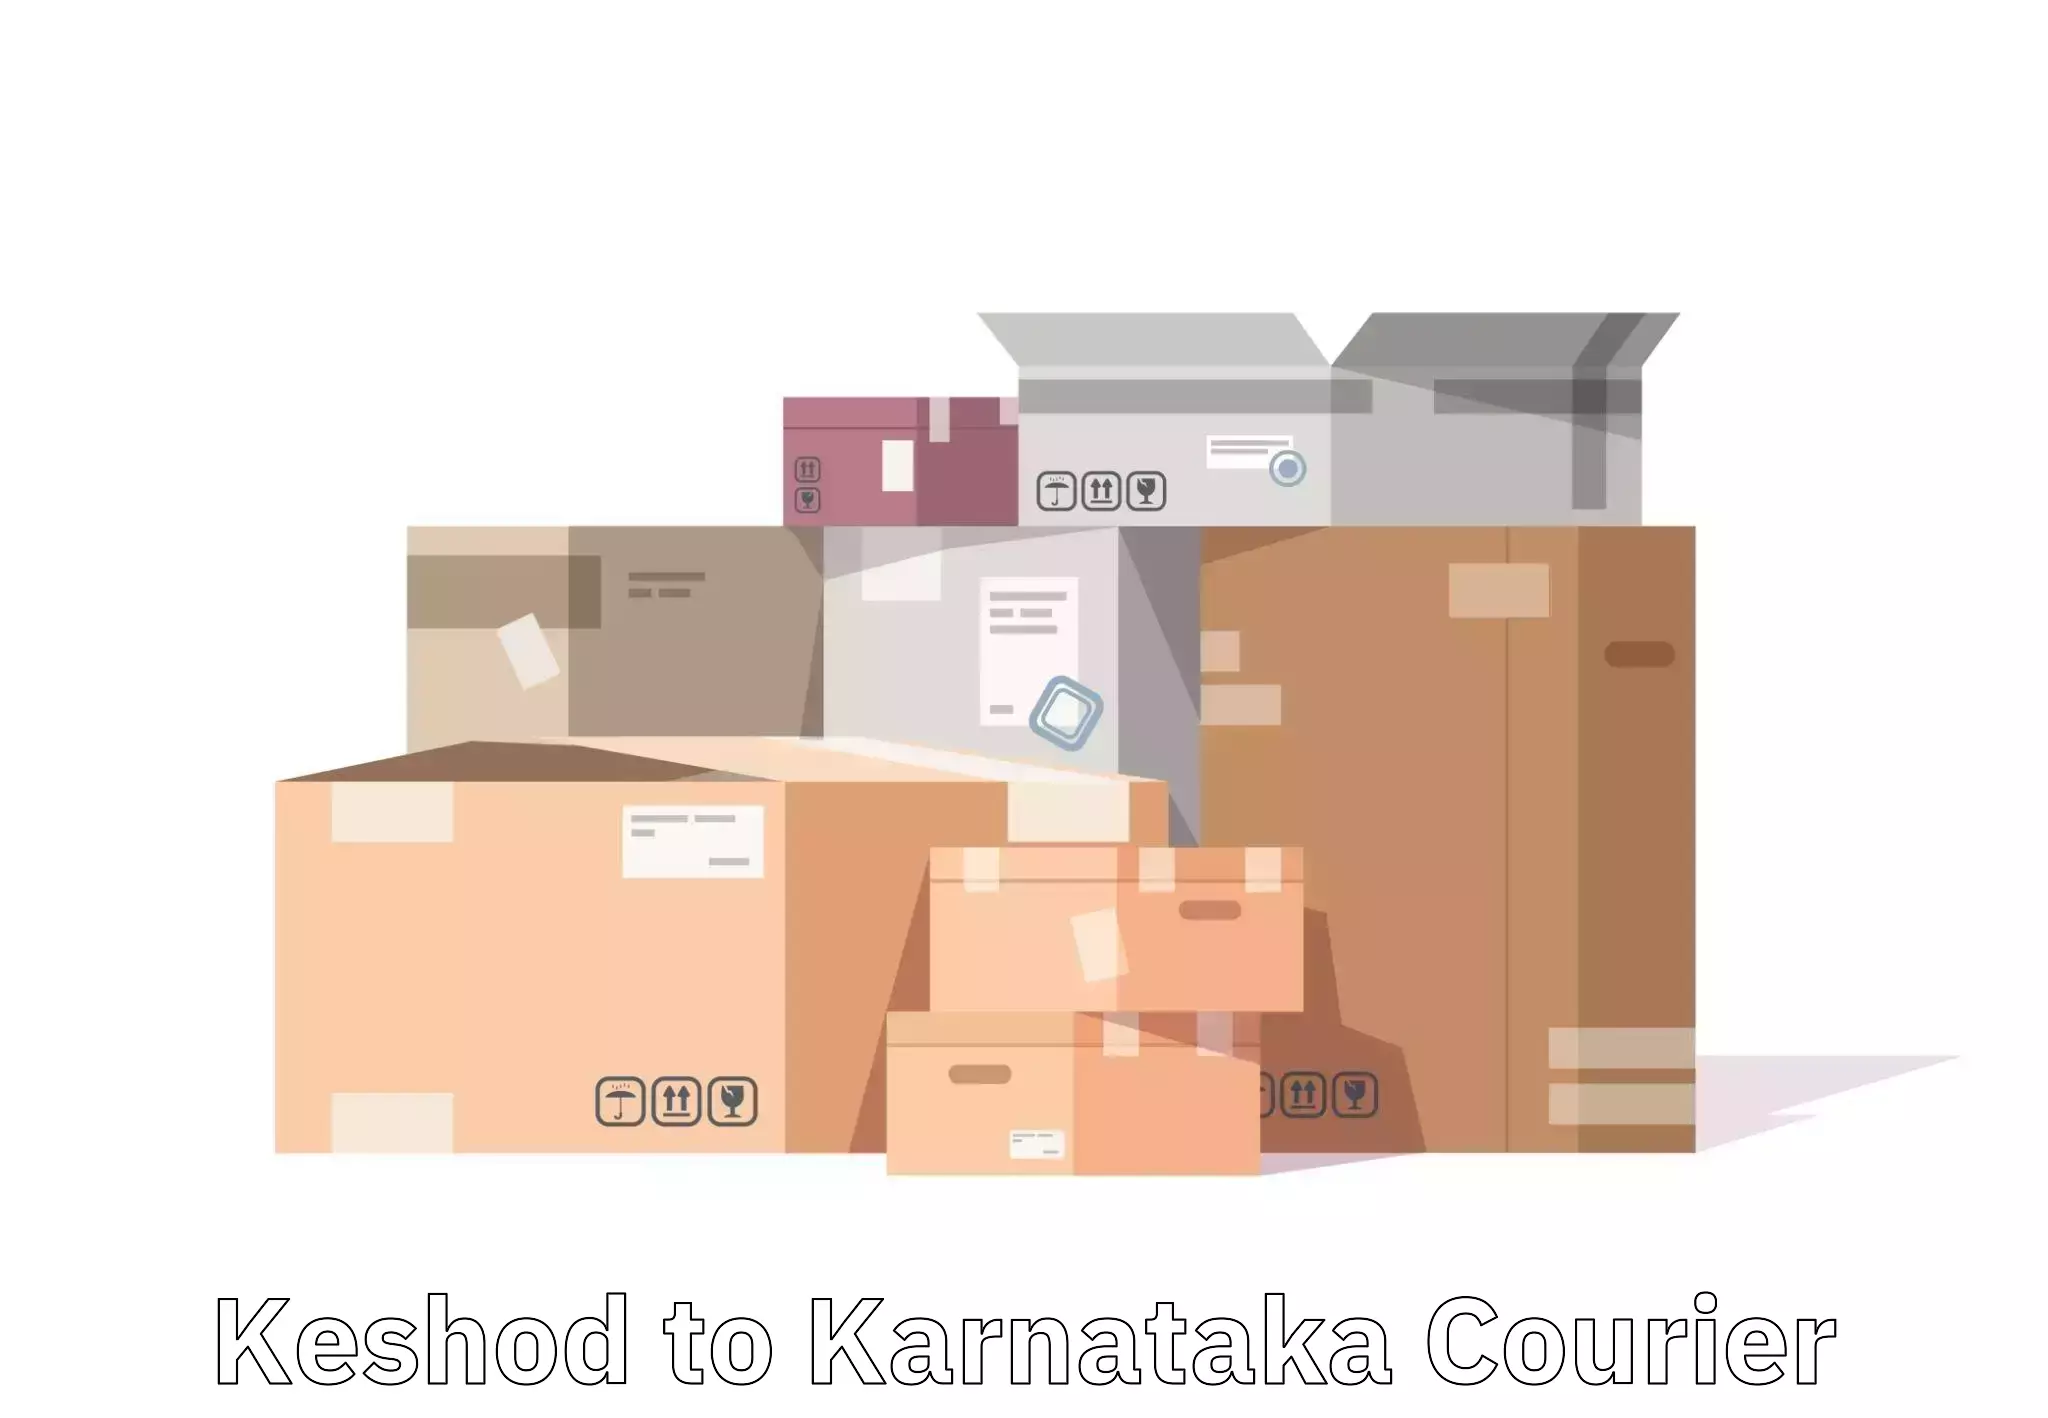 Baggage transport logistics Keshod to Karnataka